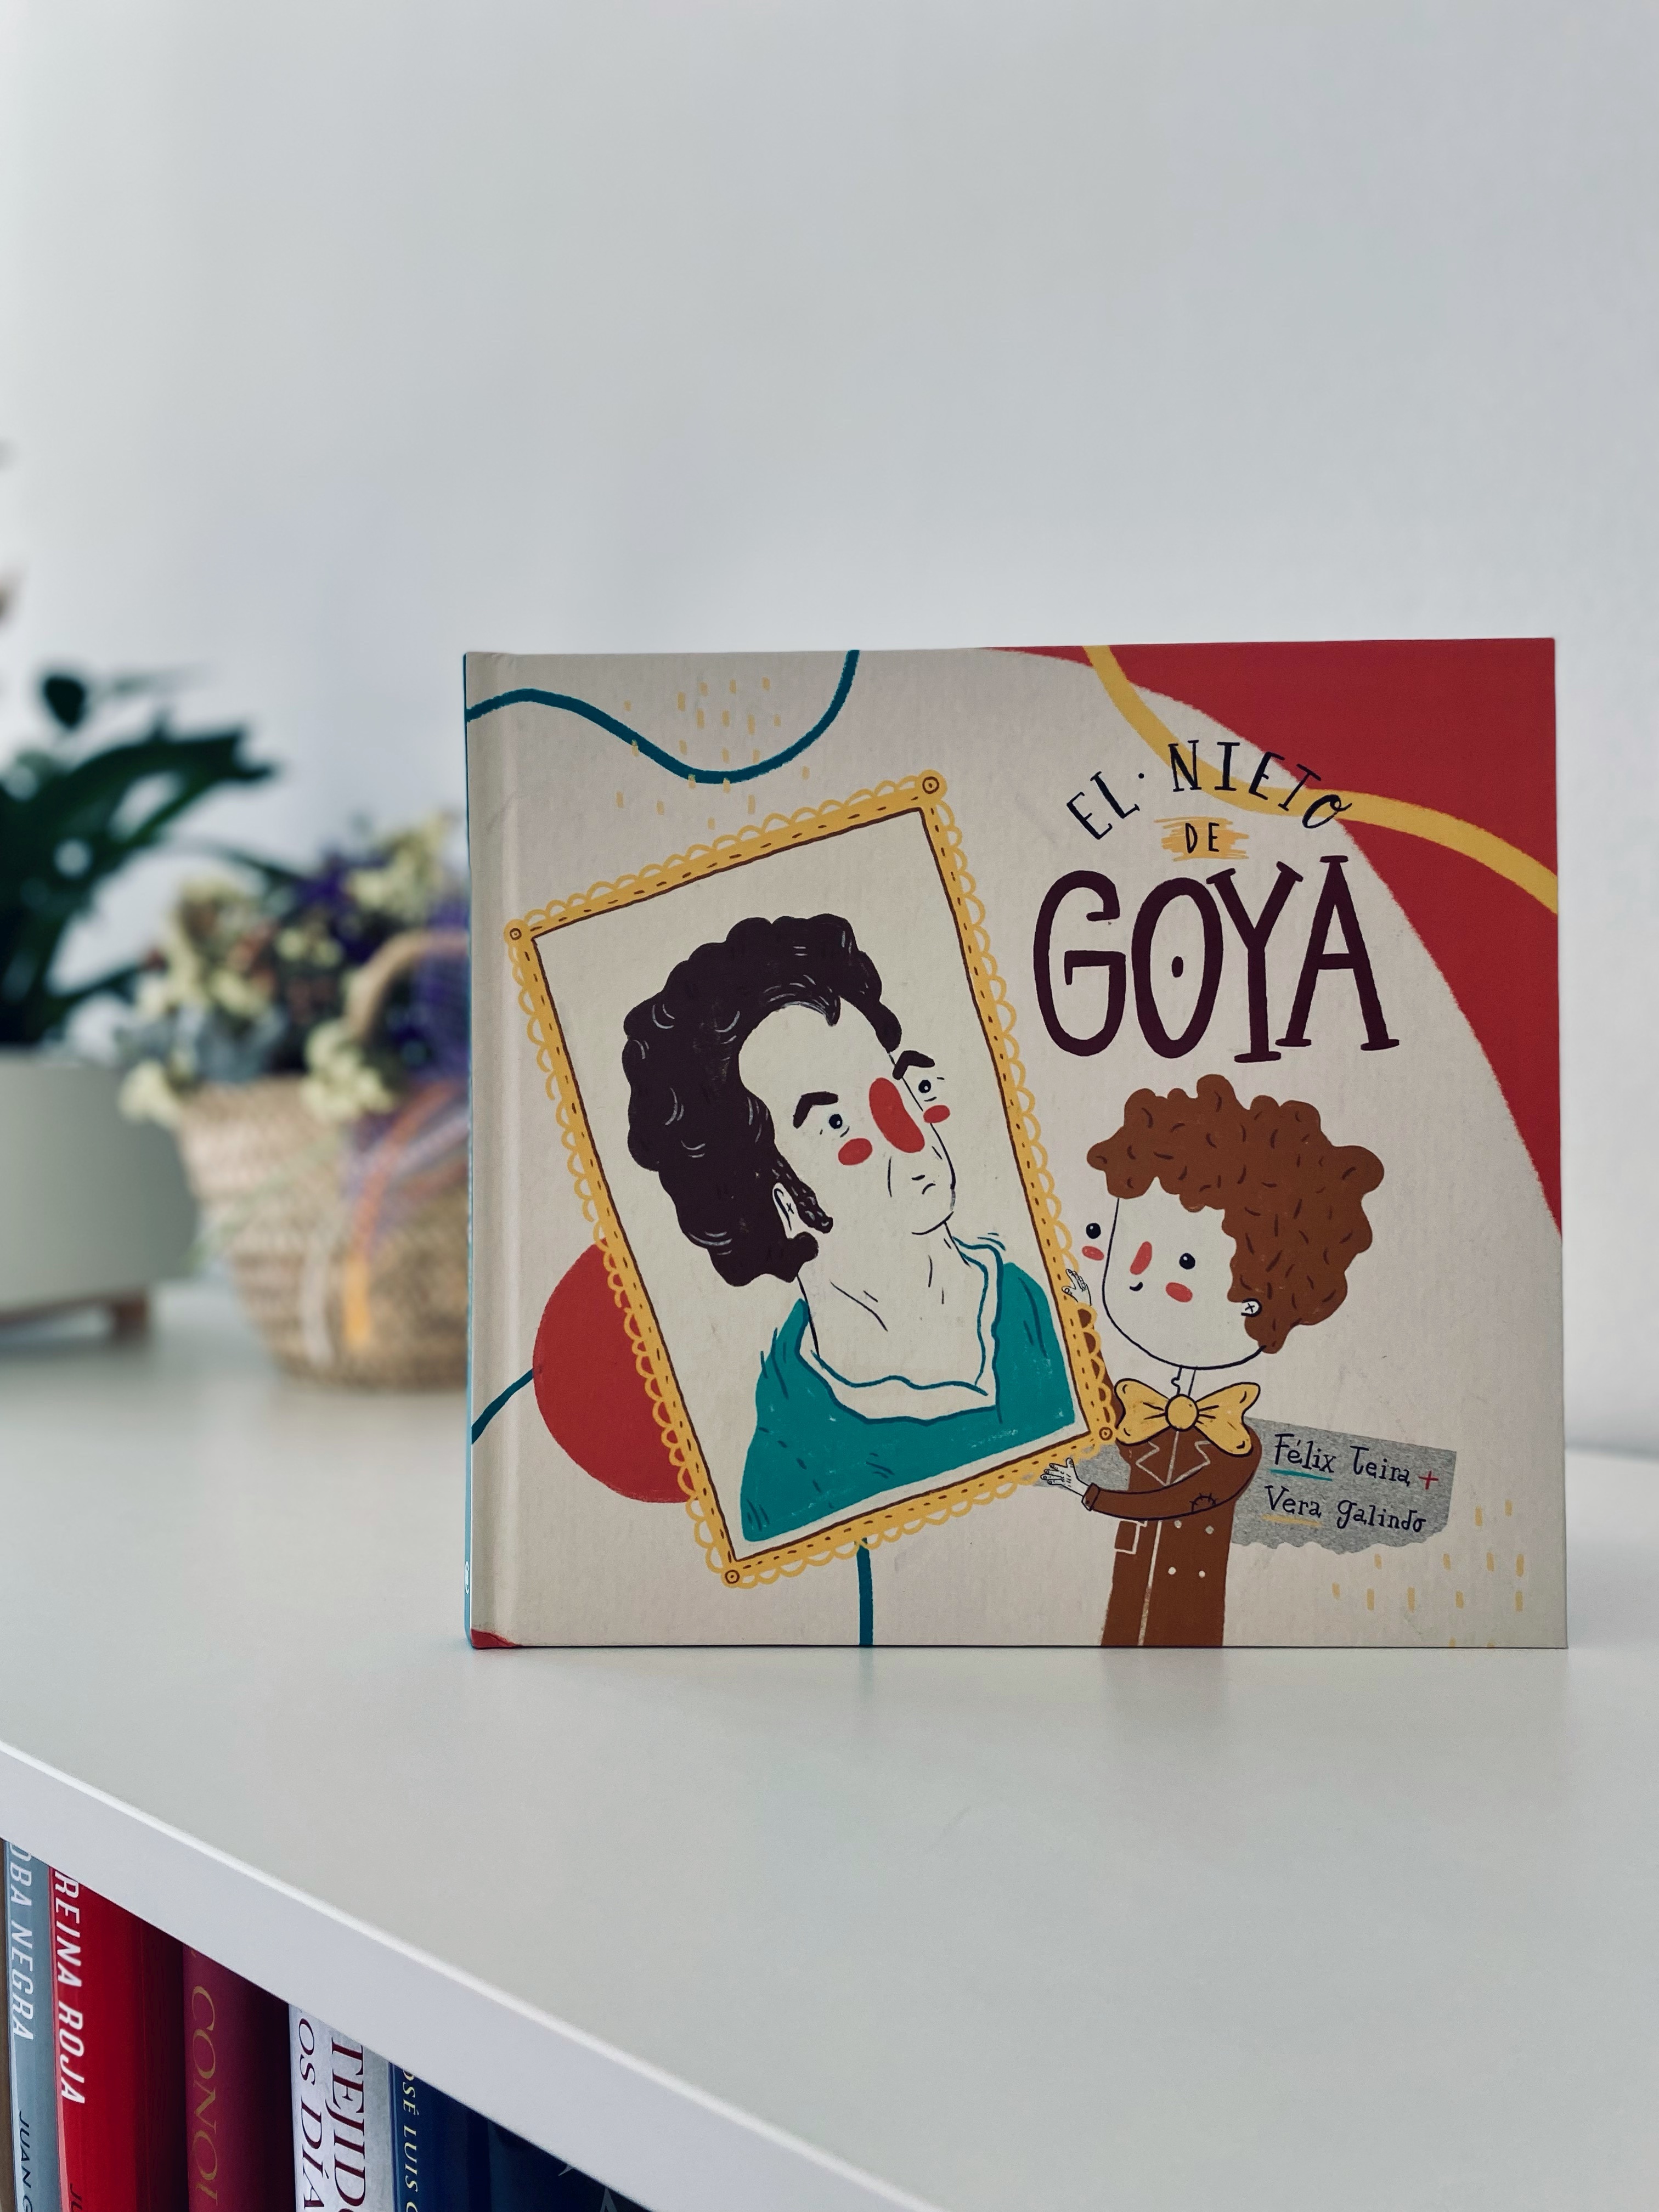 Le petit-fils de Goya